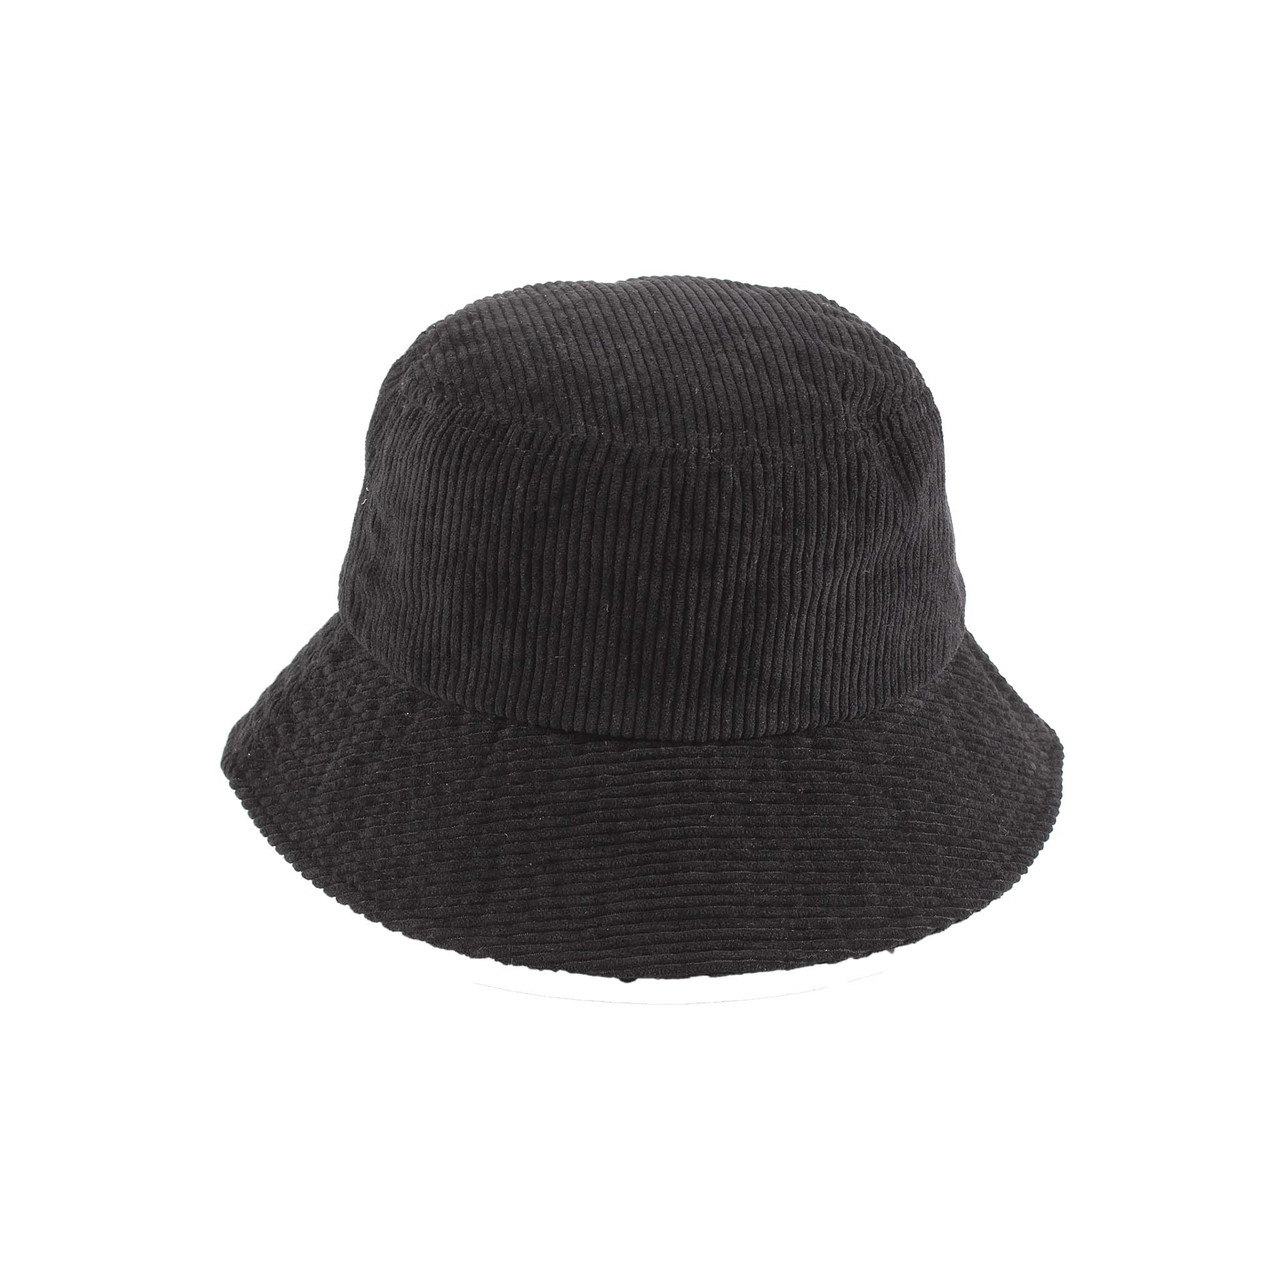 Wholesale hats